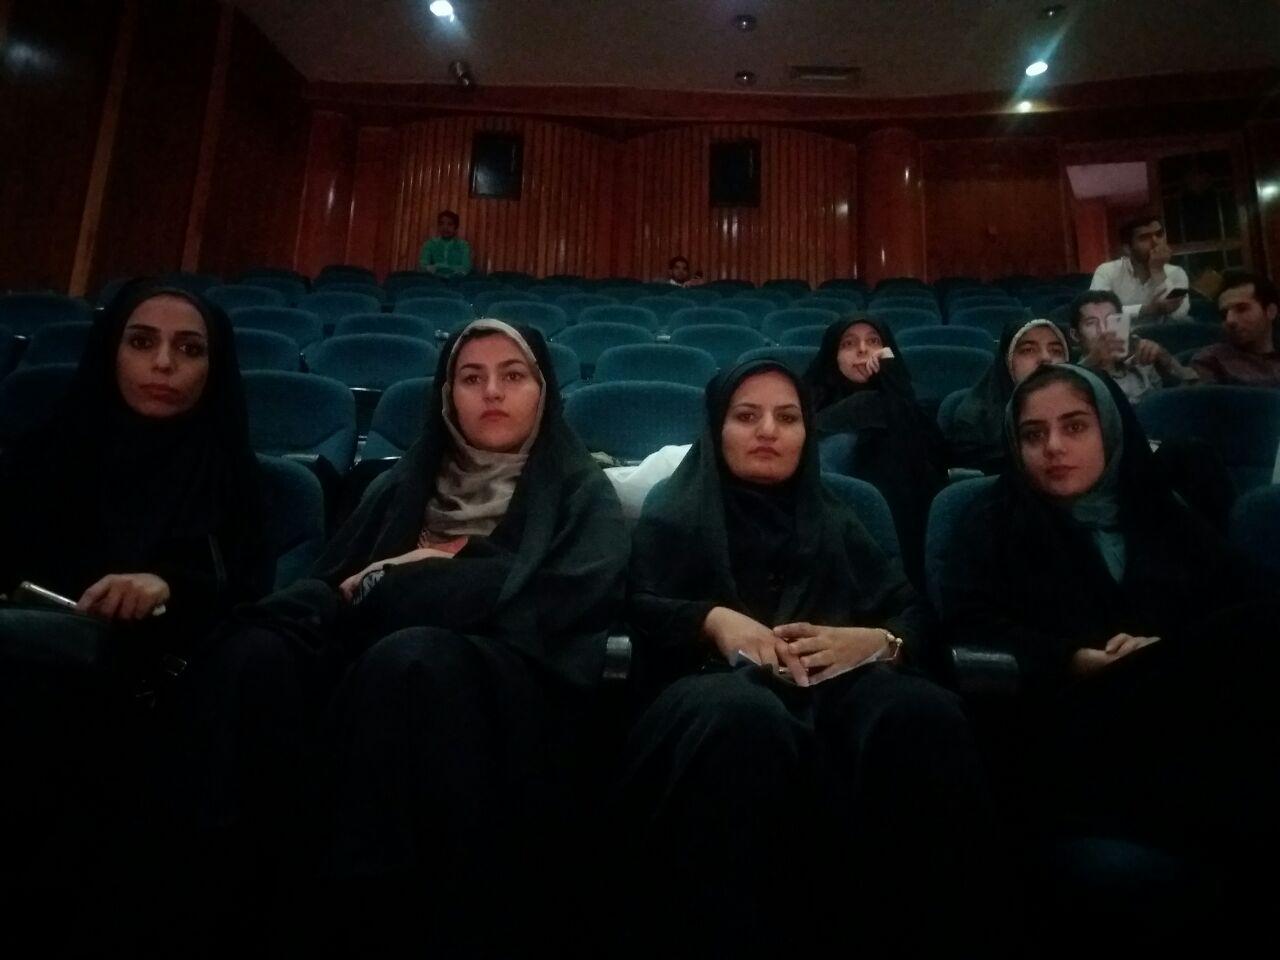 ‍ کاروان اعزامی دانشگاه علوم پزشکی کردستان به کار خود در بیست و دومین جشنواره قرآن و عترت شیراز خاتمه داد